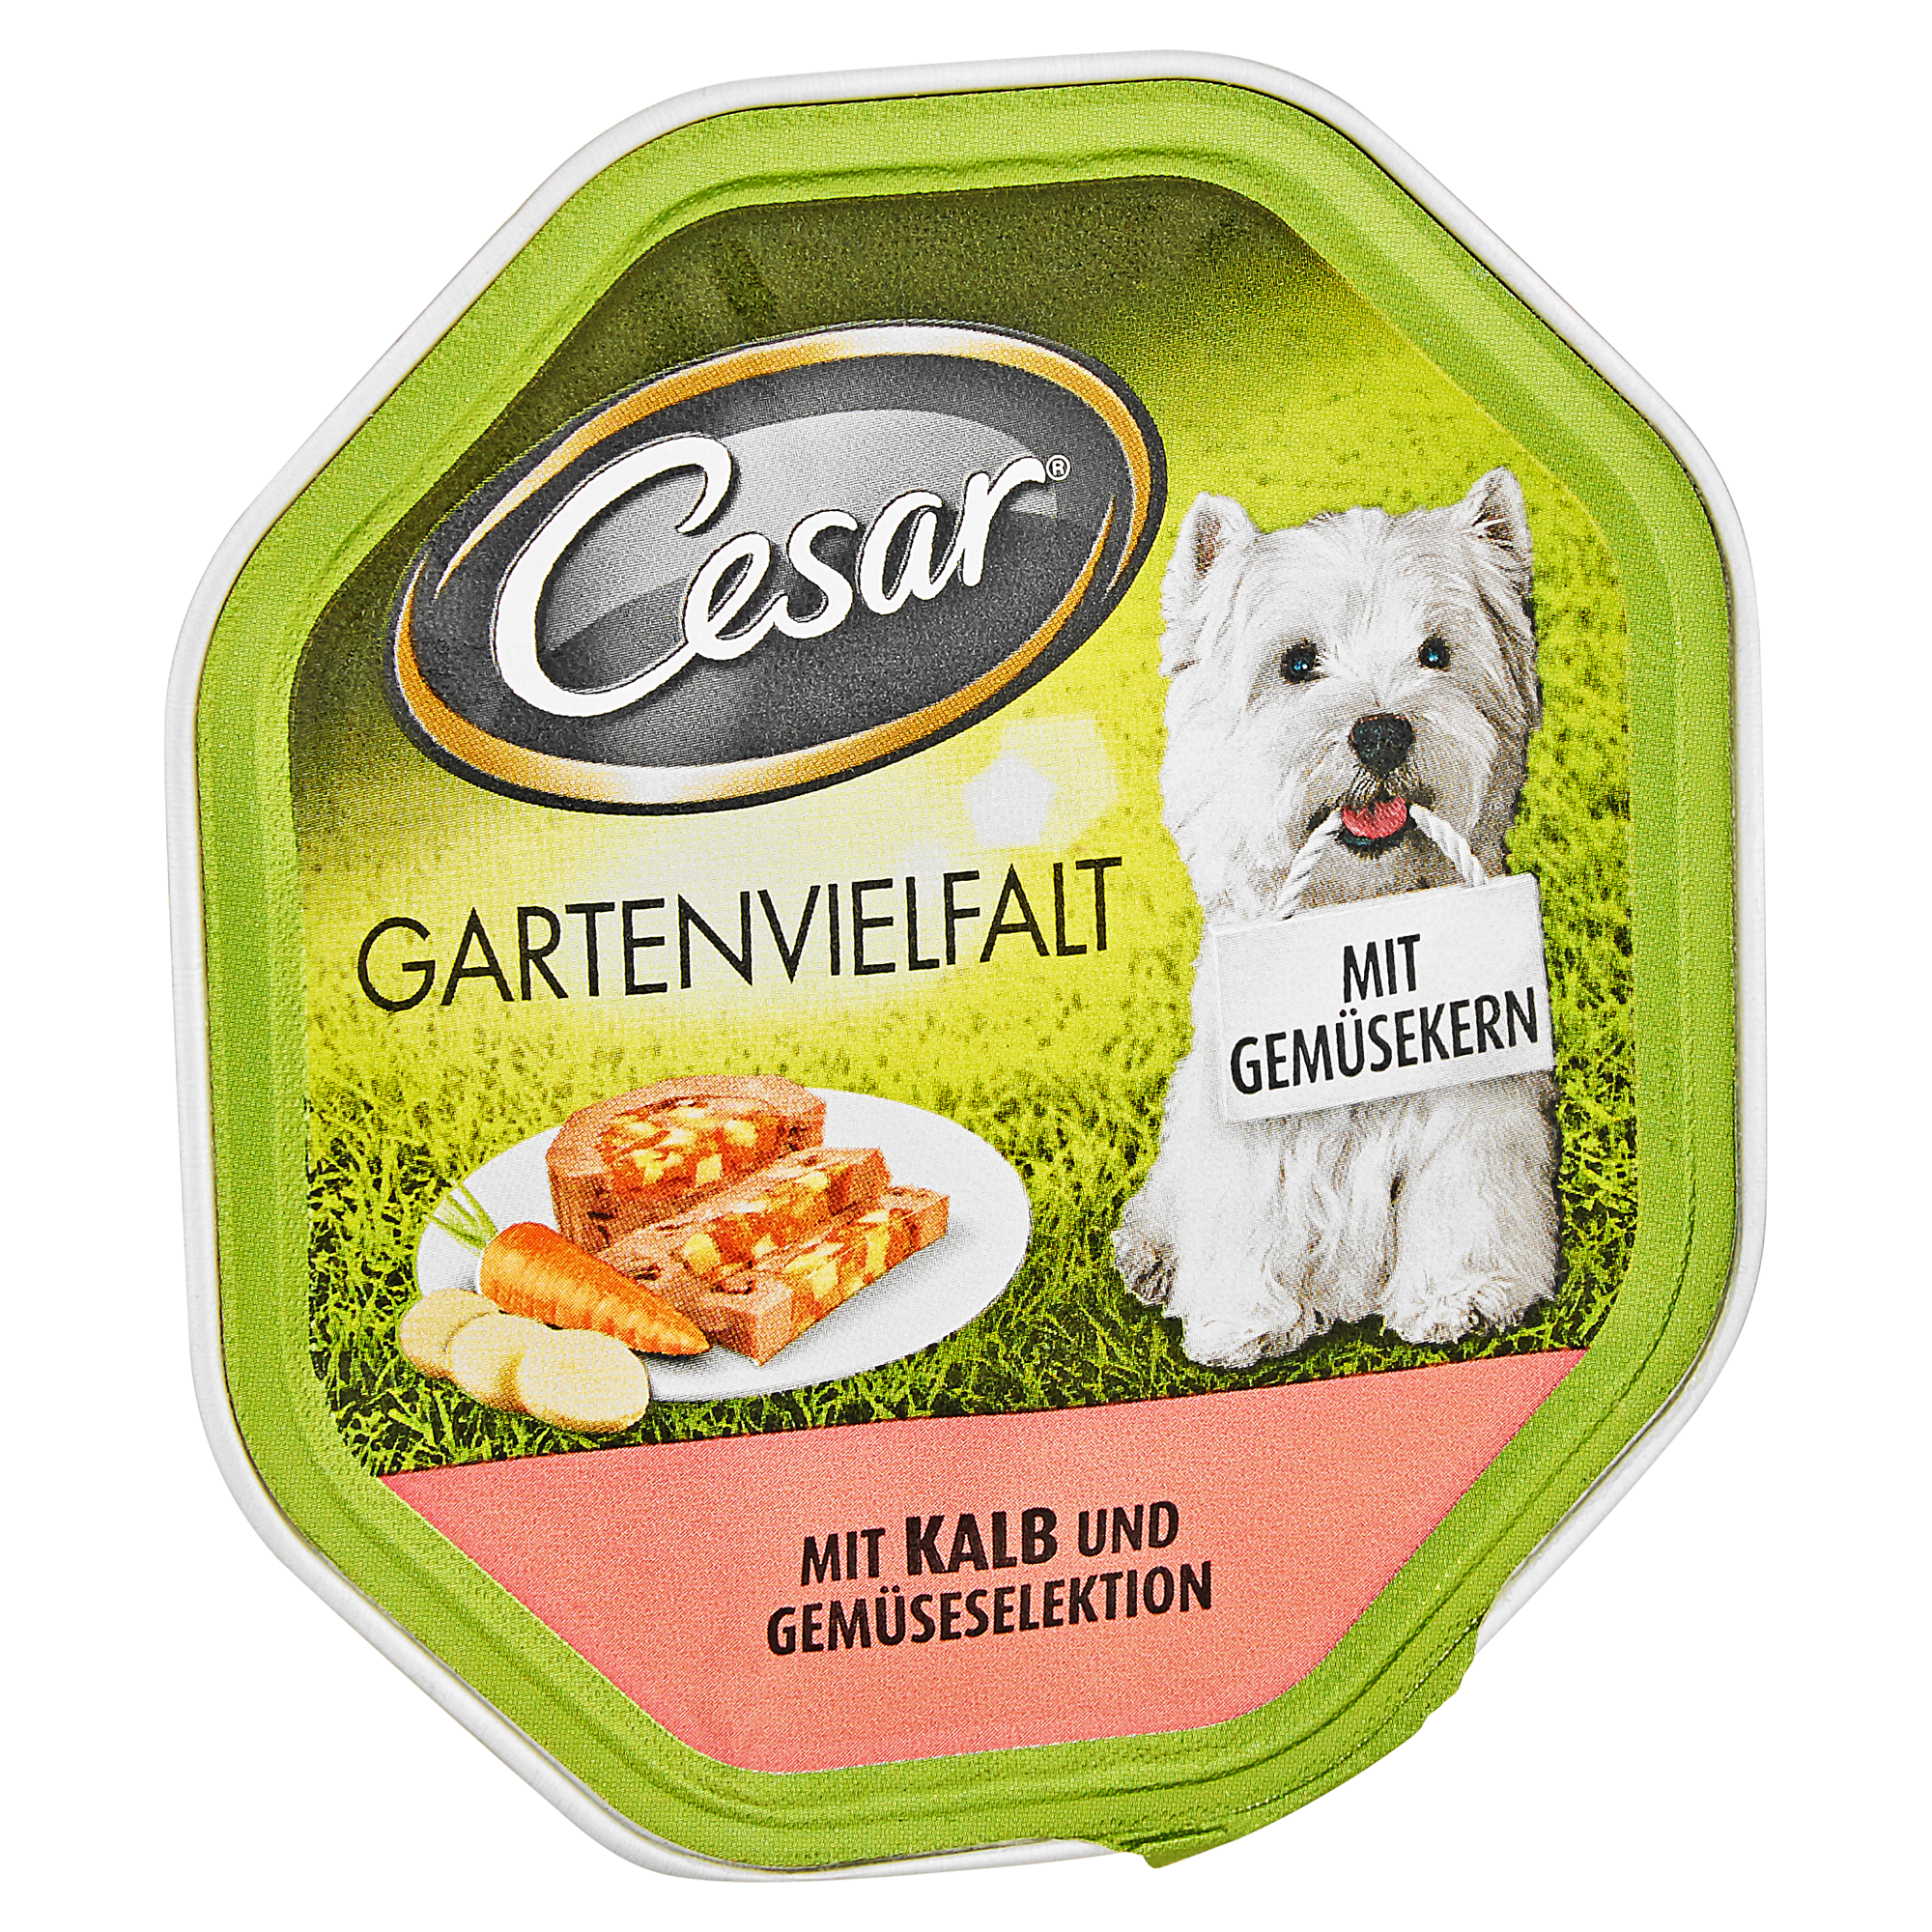 Hundenassfutter "Gartenvielfalt" mit Kalb und Gemüseselektion 150 g + product picture